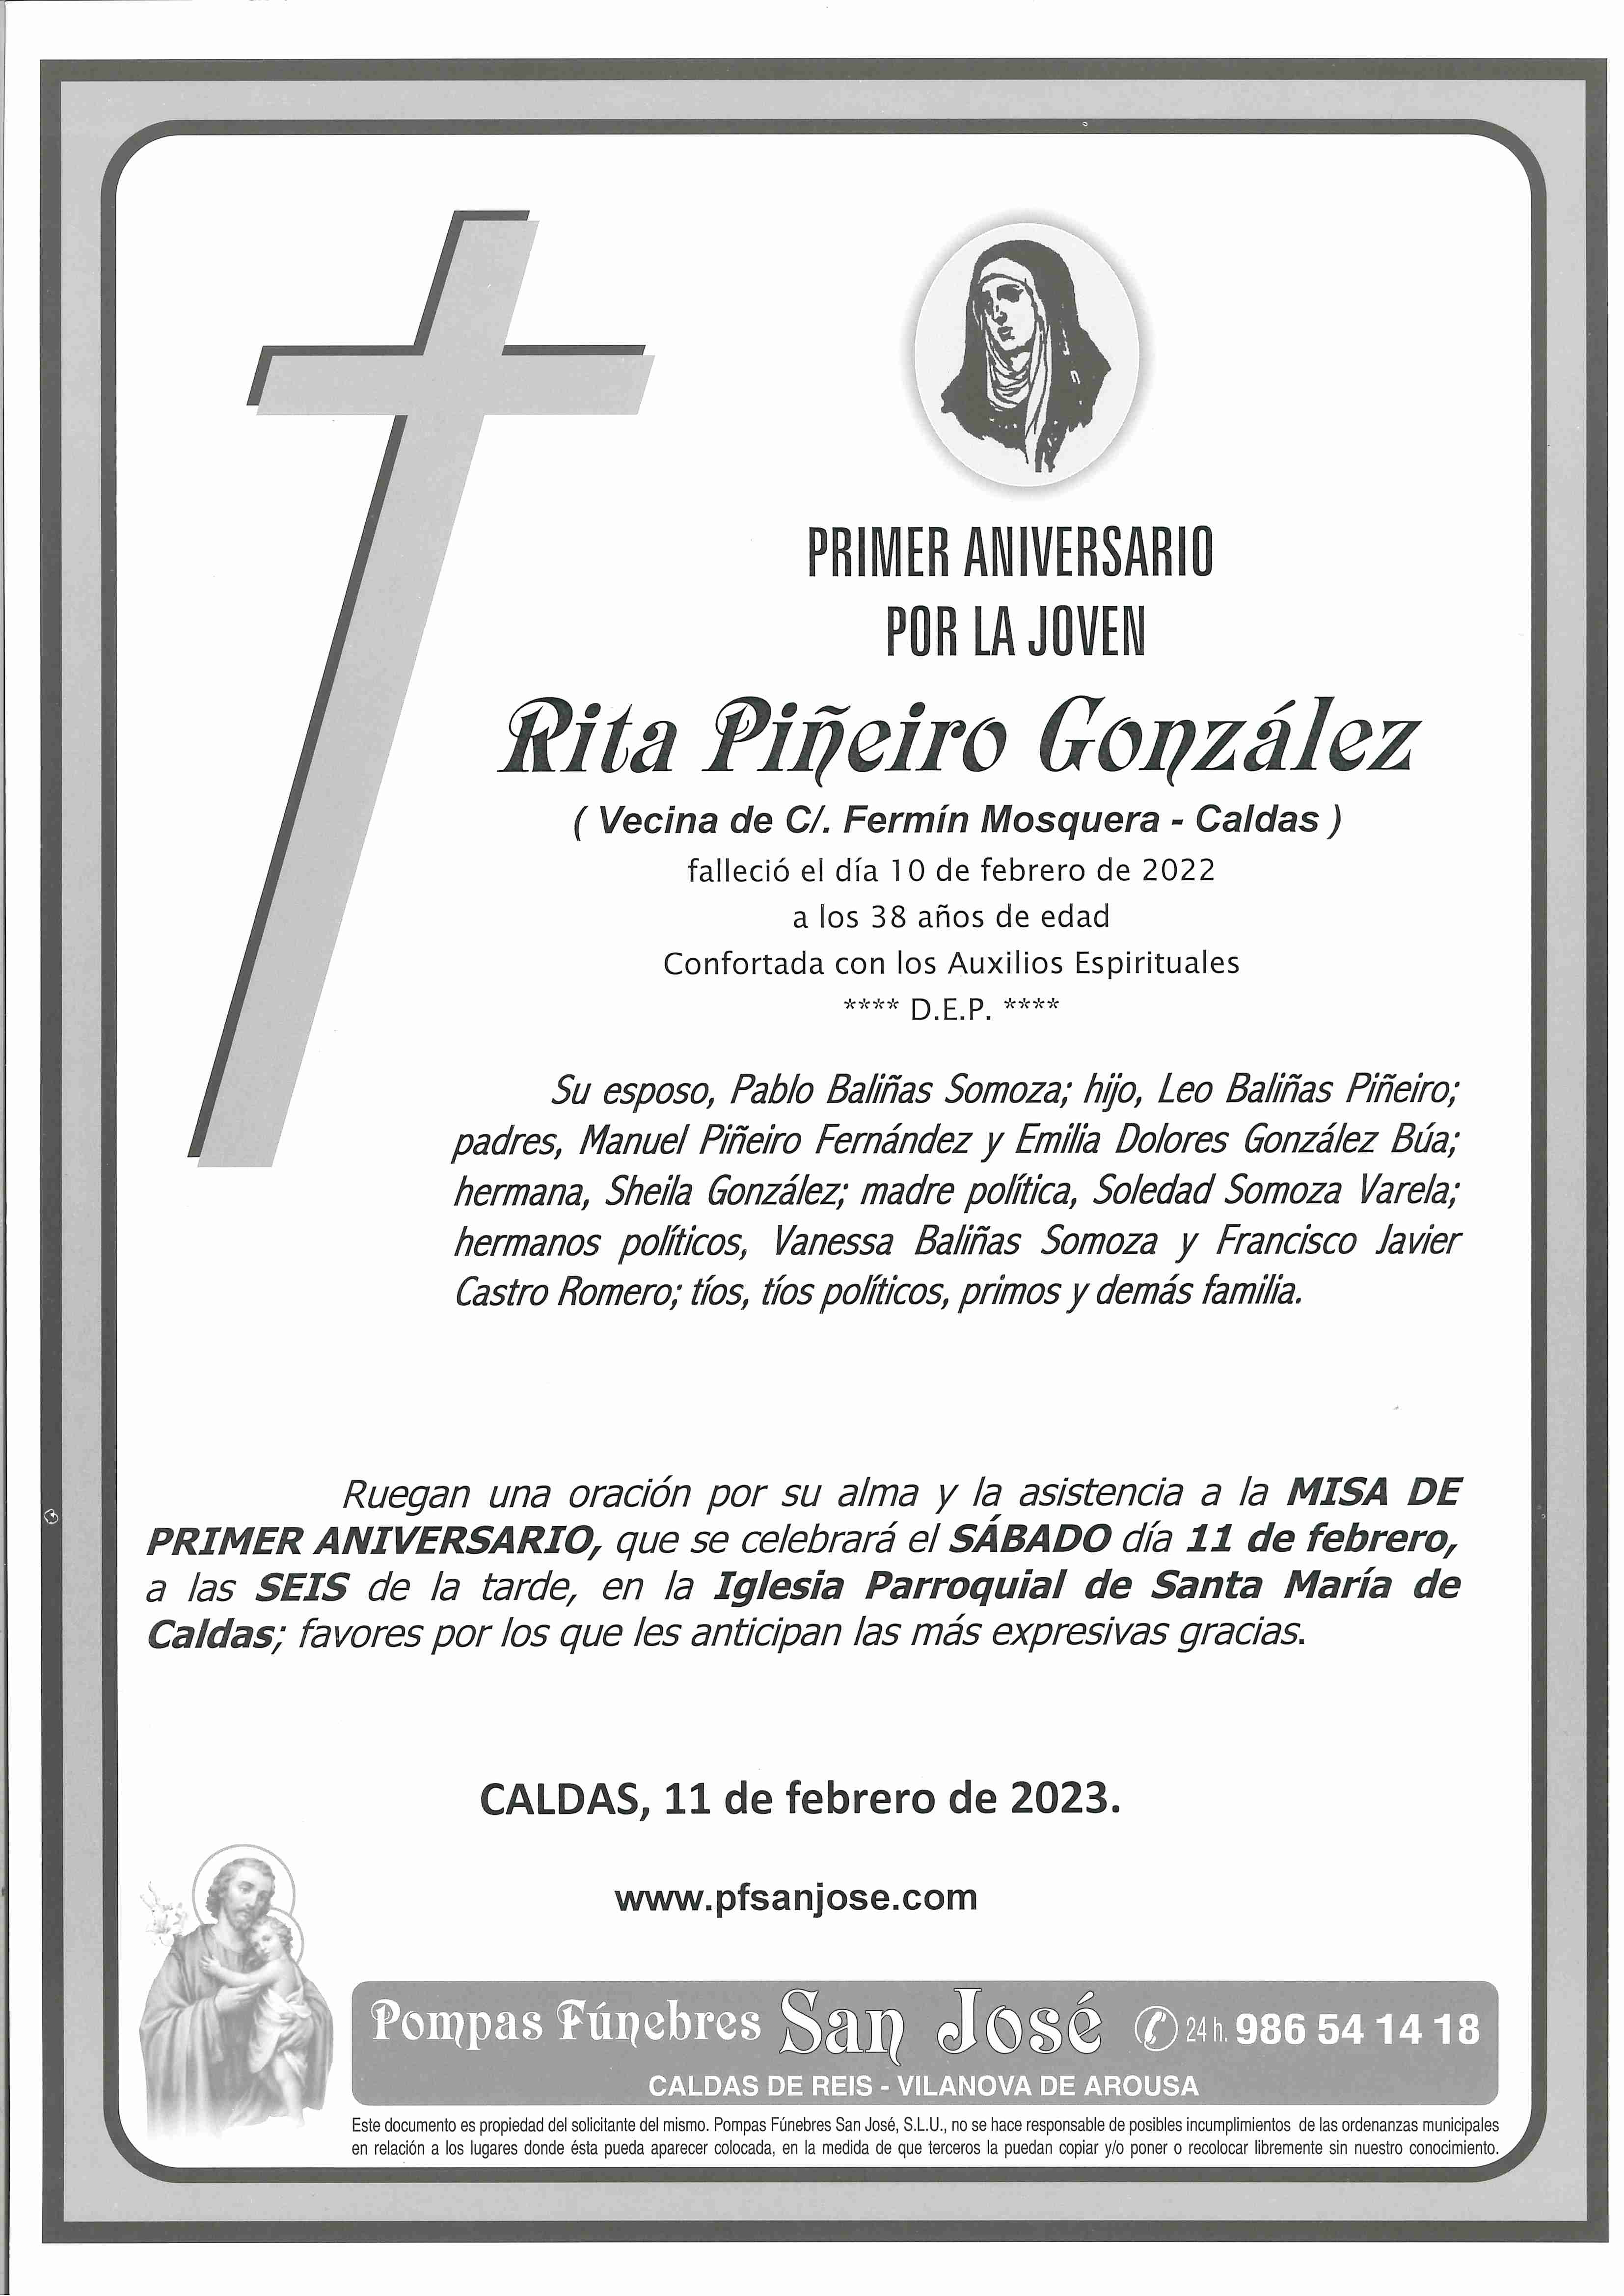 Rita Piñeiro González